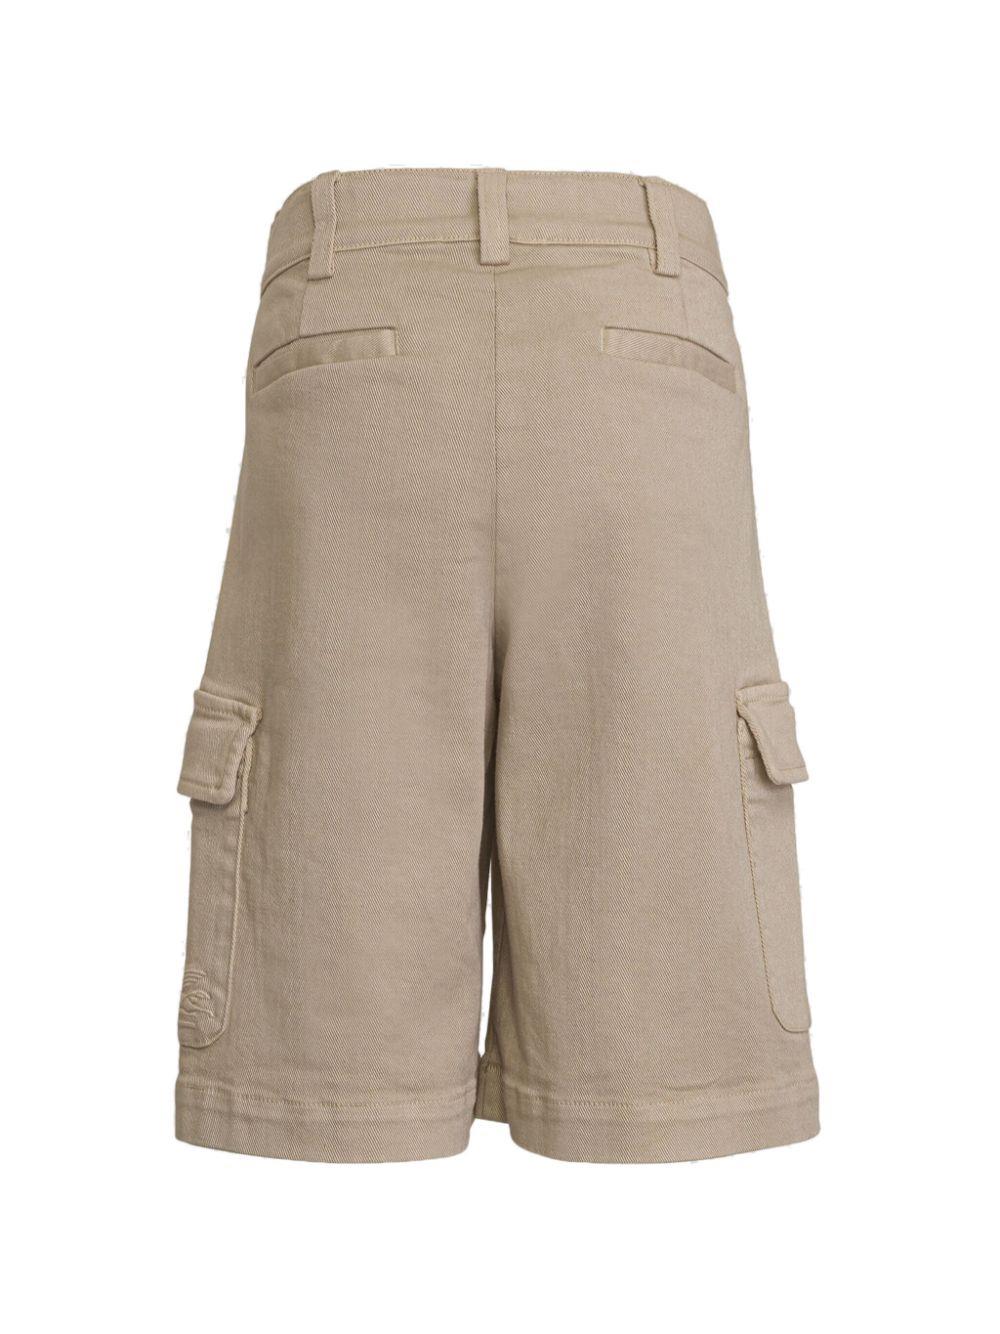 ETRO KIDS logo-embroidered cargo shorts - Neutrals